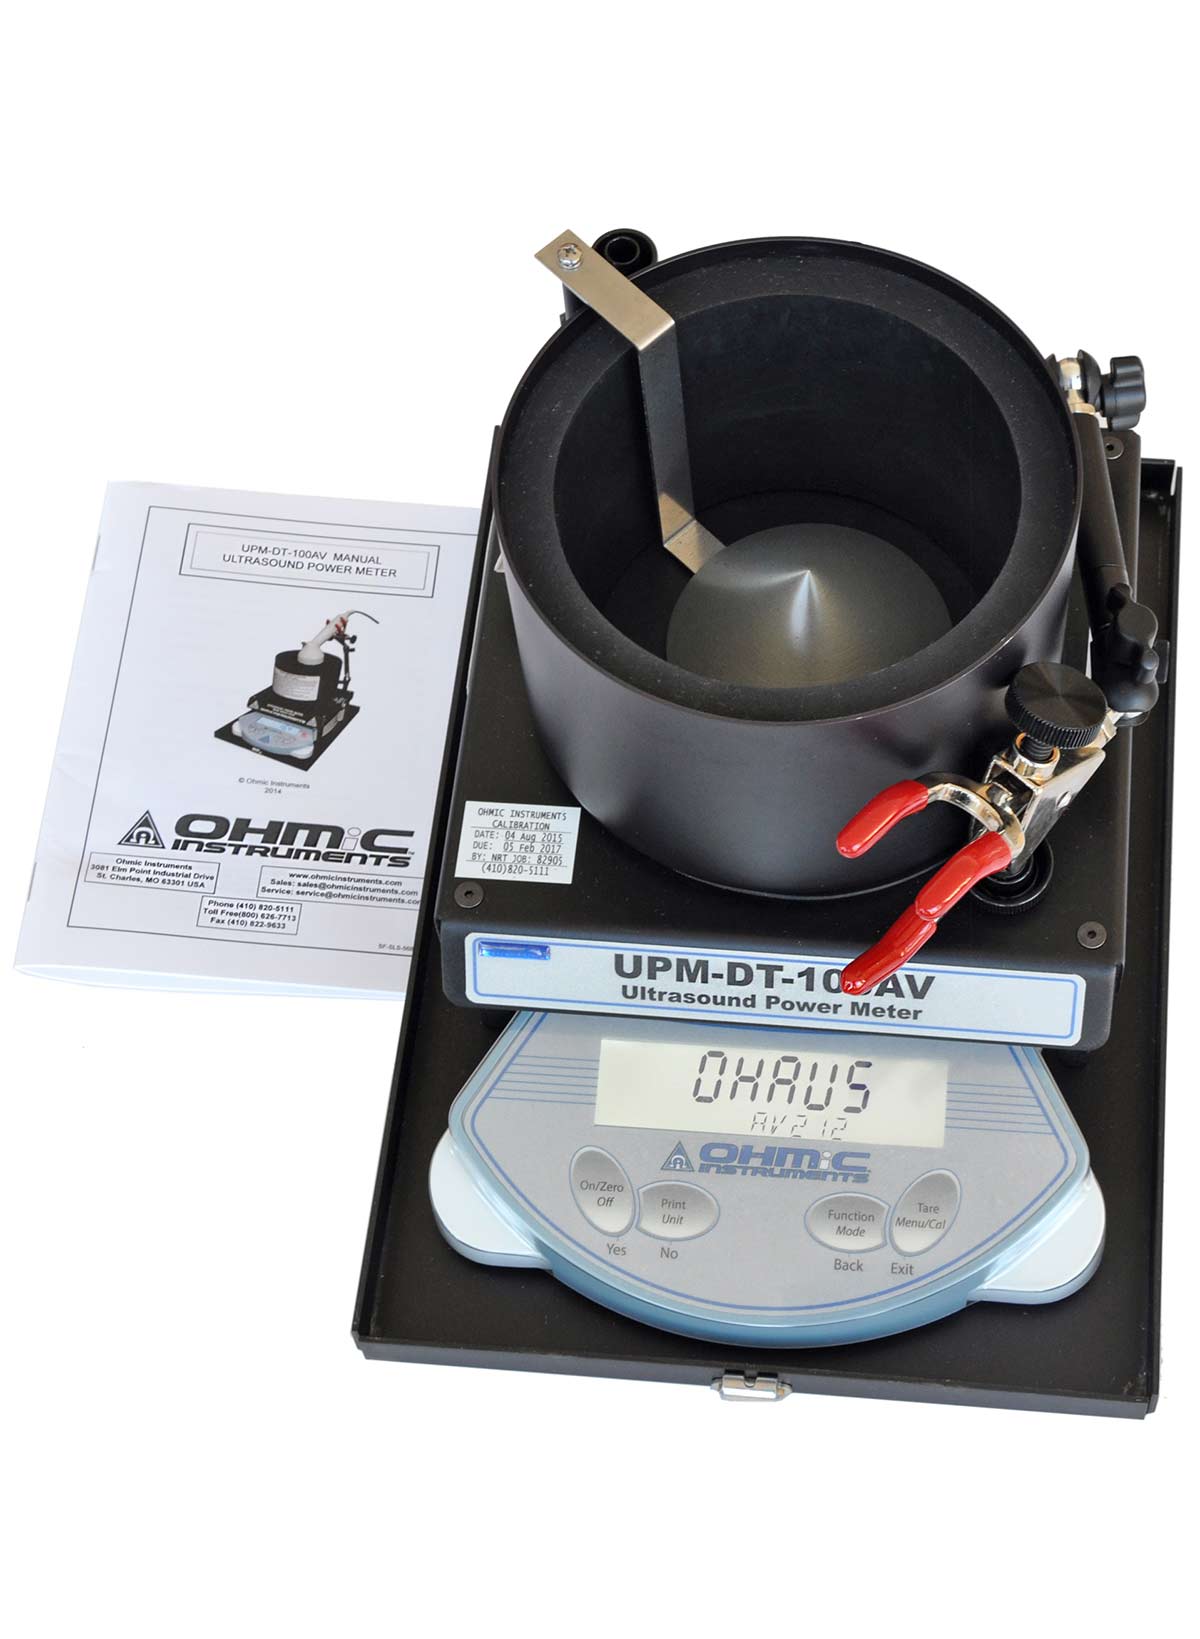 Tester OHMIC Instruments UPM-DT-100AV používáme na zkoušení ultrazvuků a měření UZ výkonu